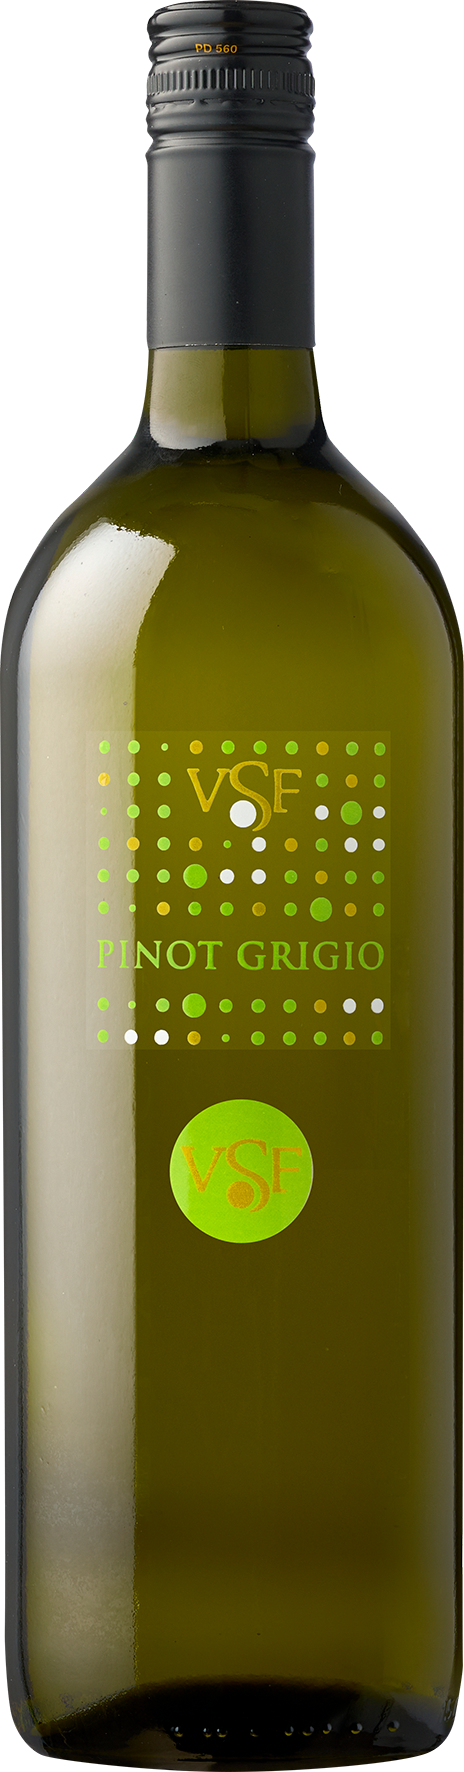 Pinot Grigio DOC Liter